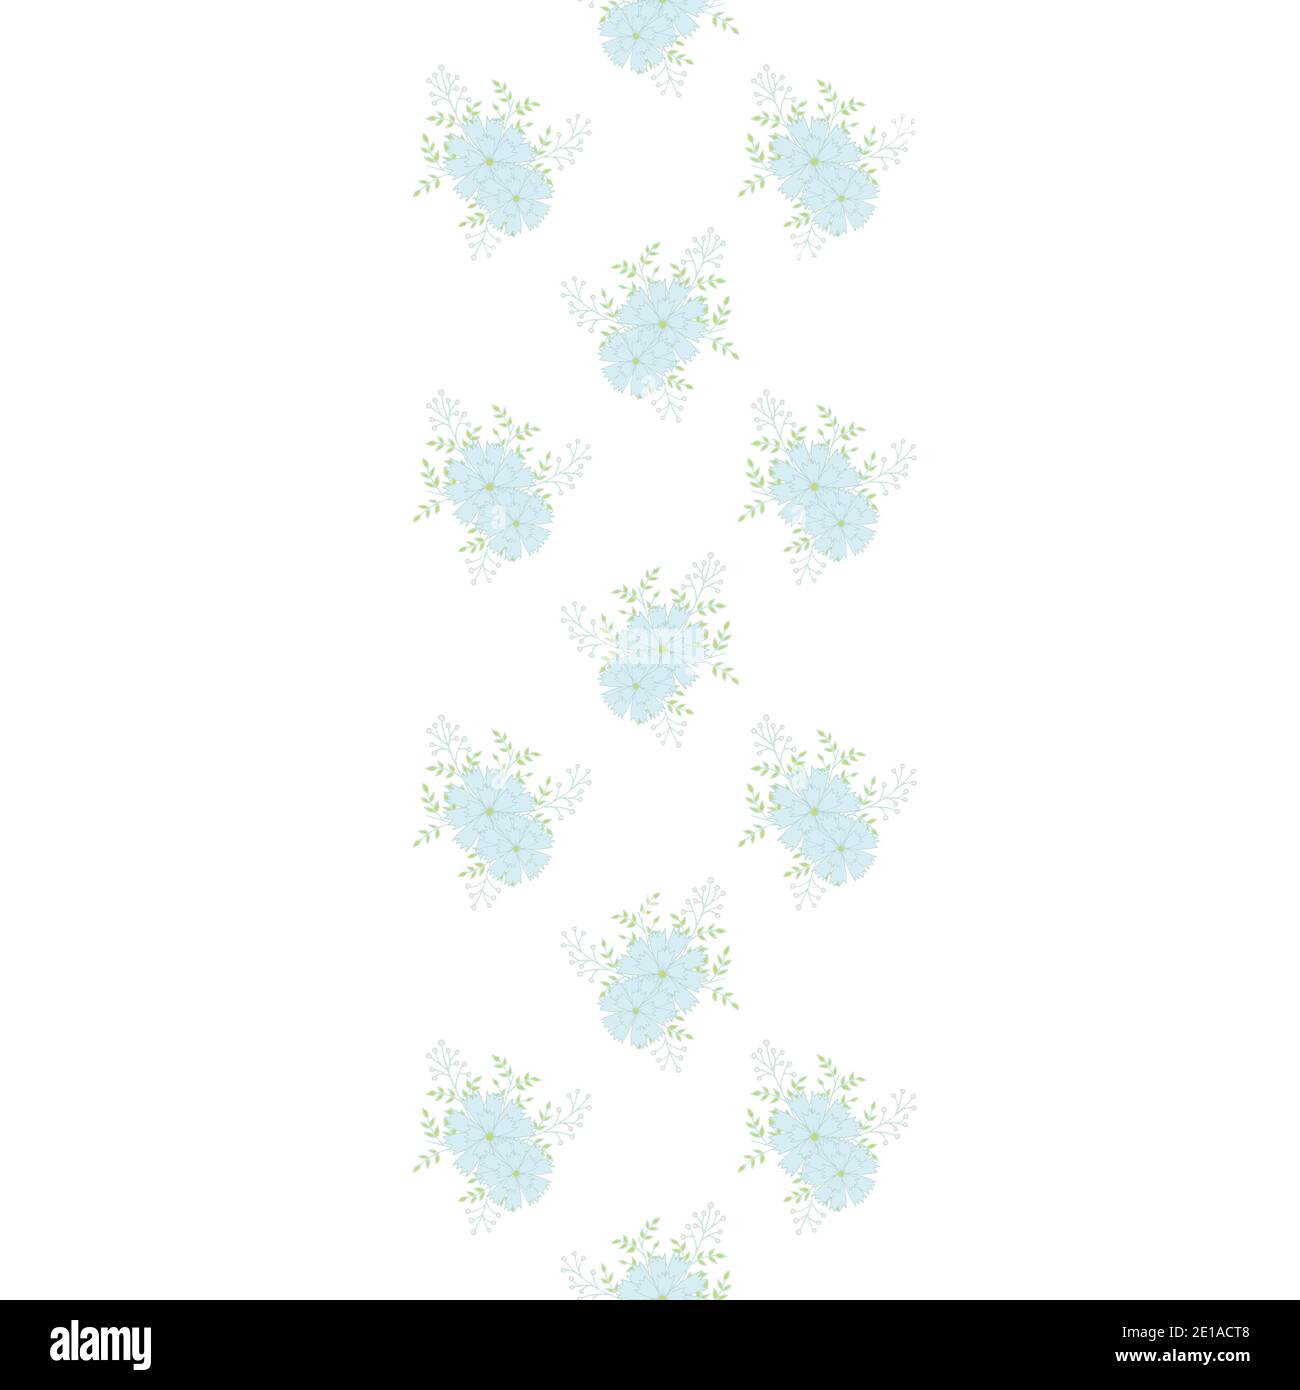 Floral Vektor wiederholen nahtlose Grenze mit Nelken. Kleine Blumensträuße mit blauen Blüten. Stock Vektor